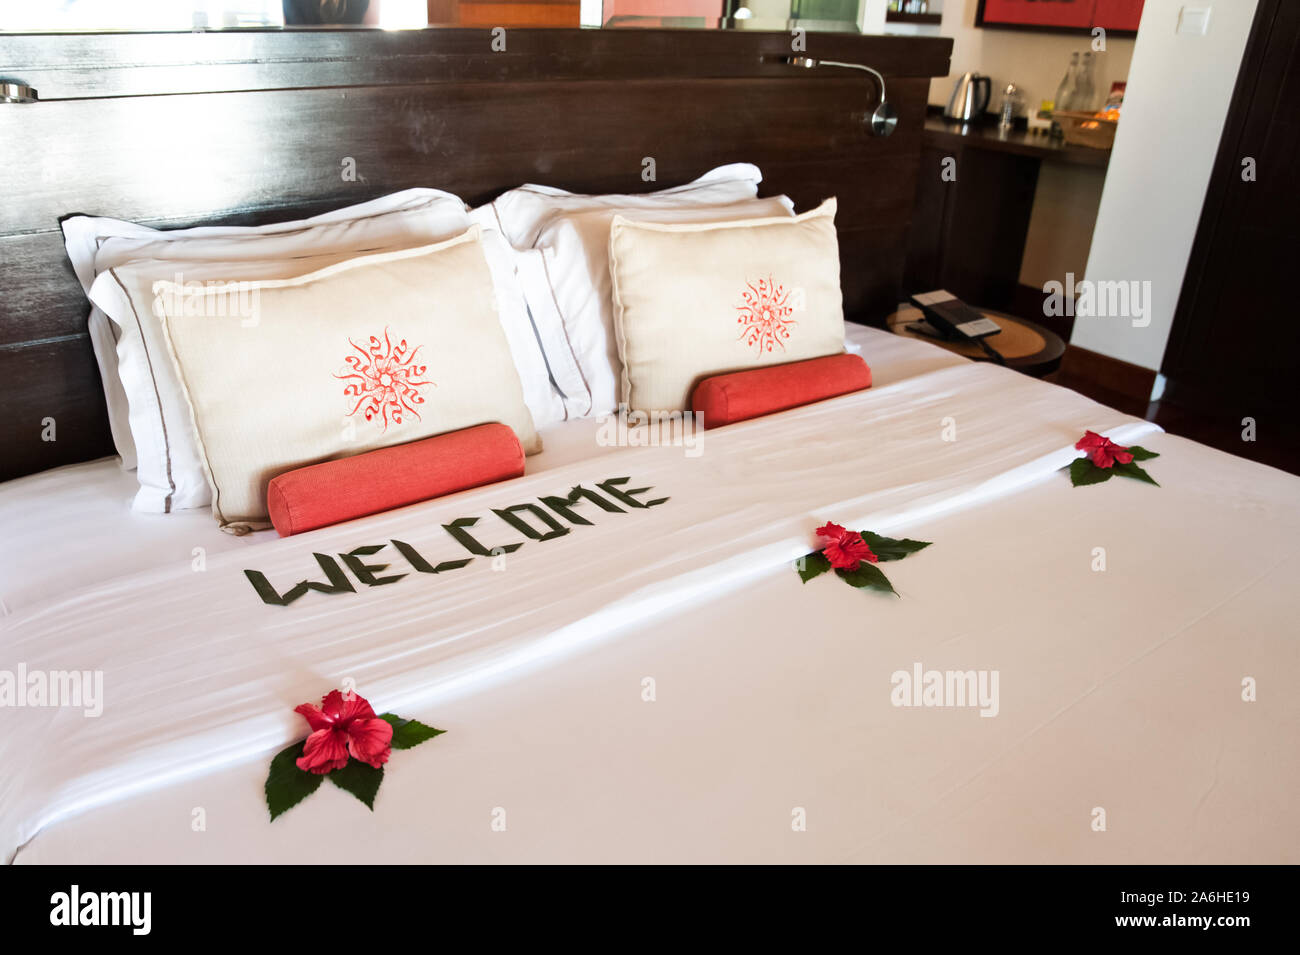 Grand lit avec oreillers et une couverture blanche, décoré avec des fleurs  tropicales et une inscription - bienvenue. Thème de l'hôtel service, hôtel,  plage, reste Photo Stock - Alamy